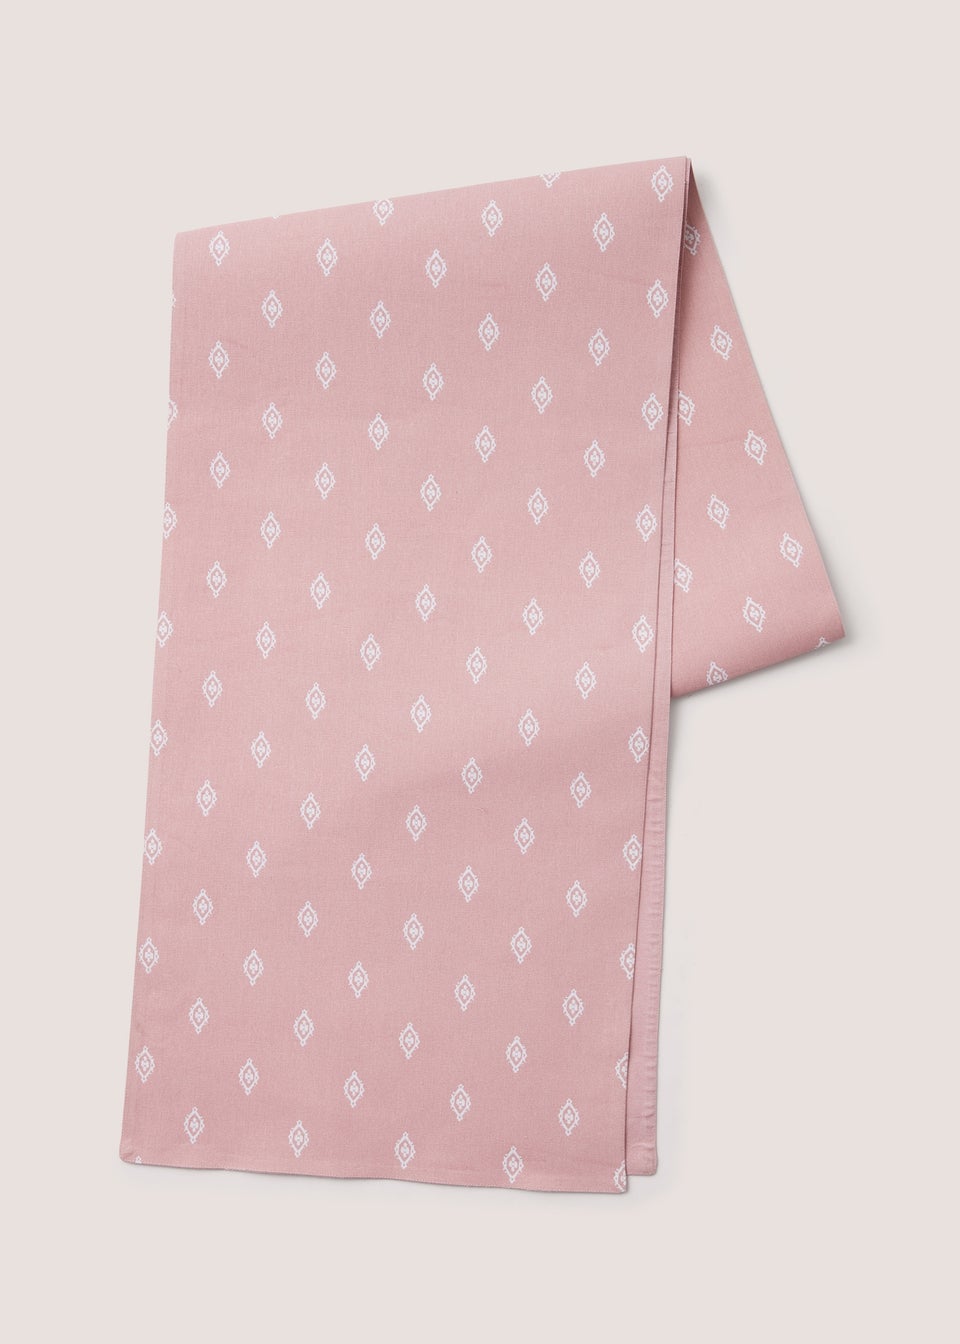 Pink Artisan Runner (35cm x 218cm)